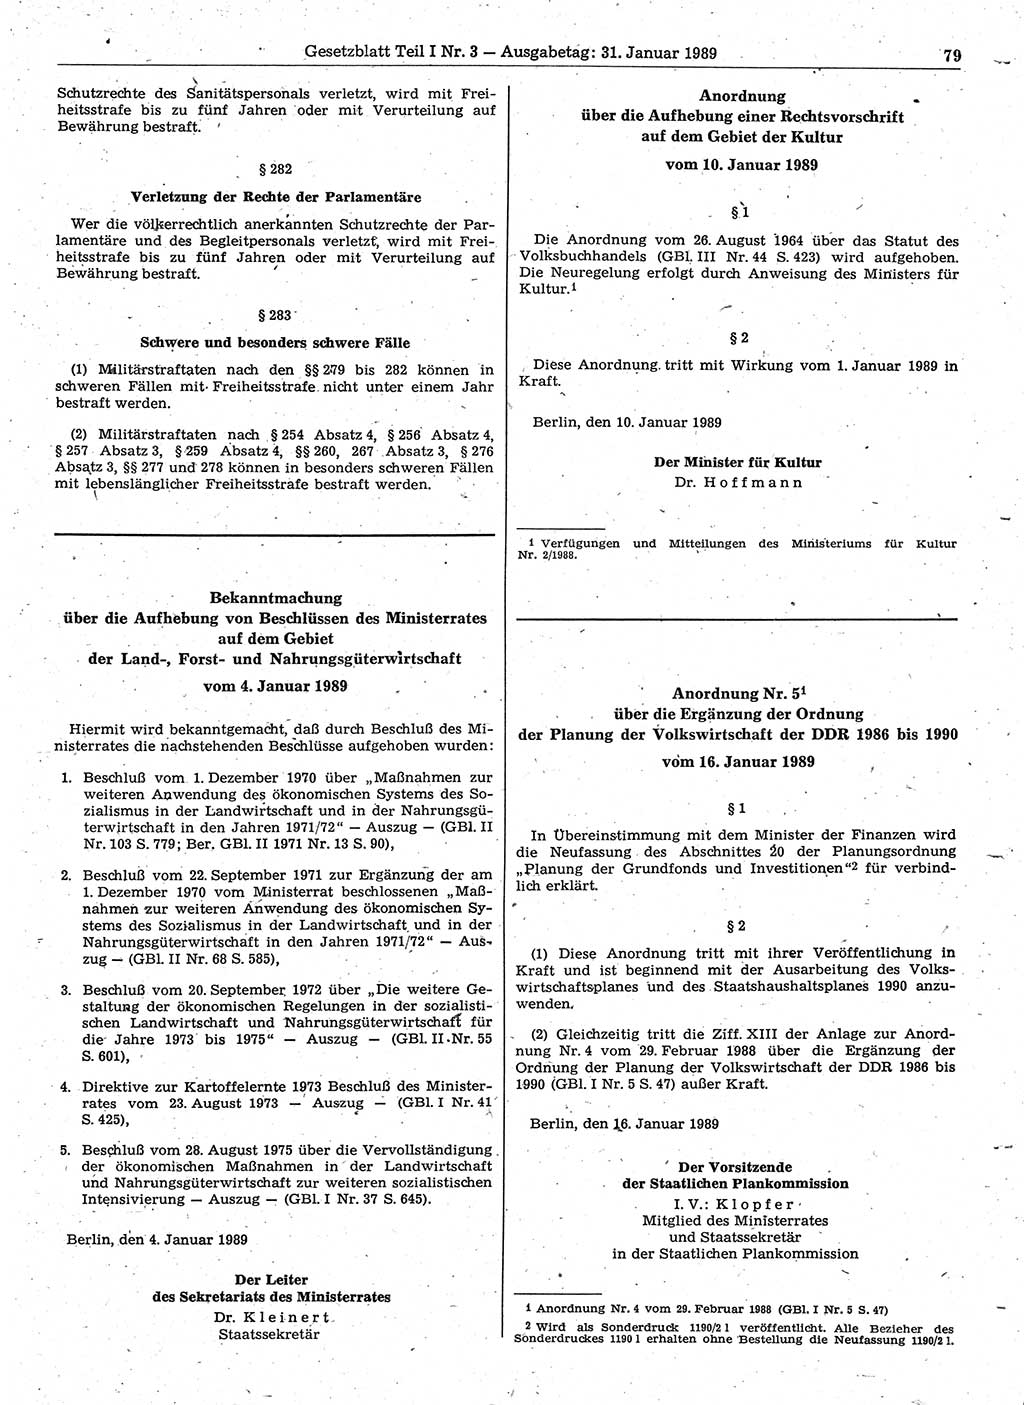 Gesetzblatt (GBl.) der Deutschen Demokratischen Republik (DDR) Teil Ⅰ 1989, Seite 79 (GBl. DDR Ⅰ 1989, S. 79)